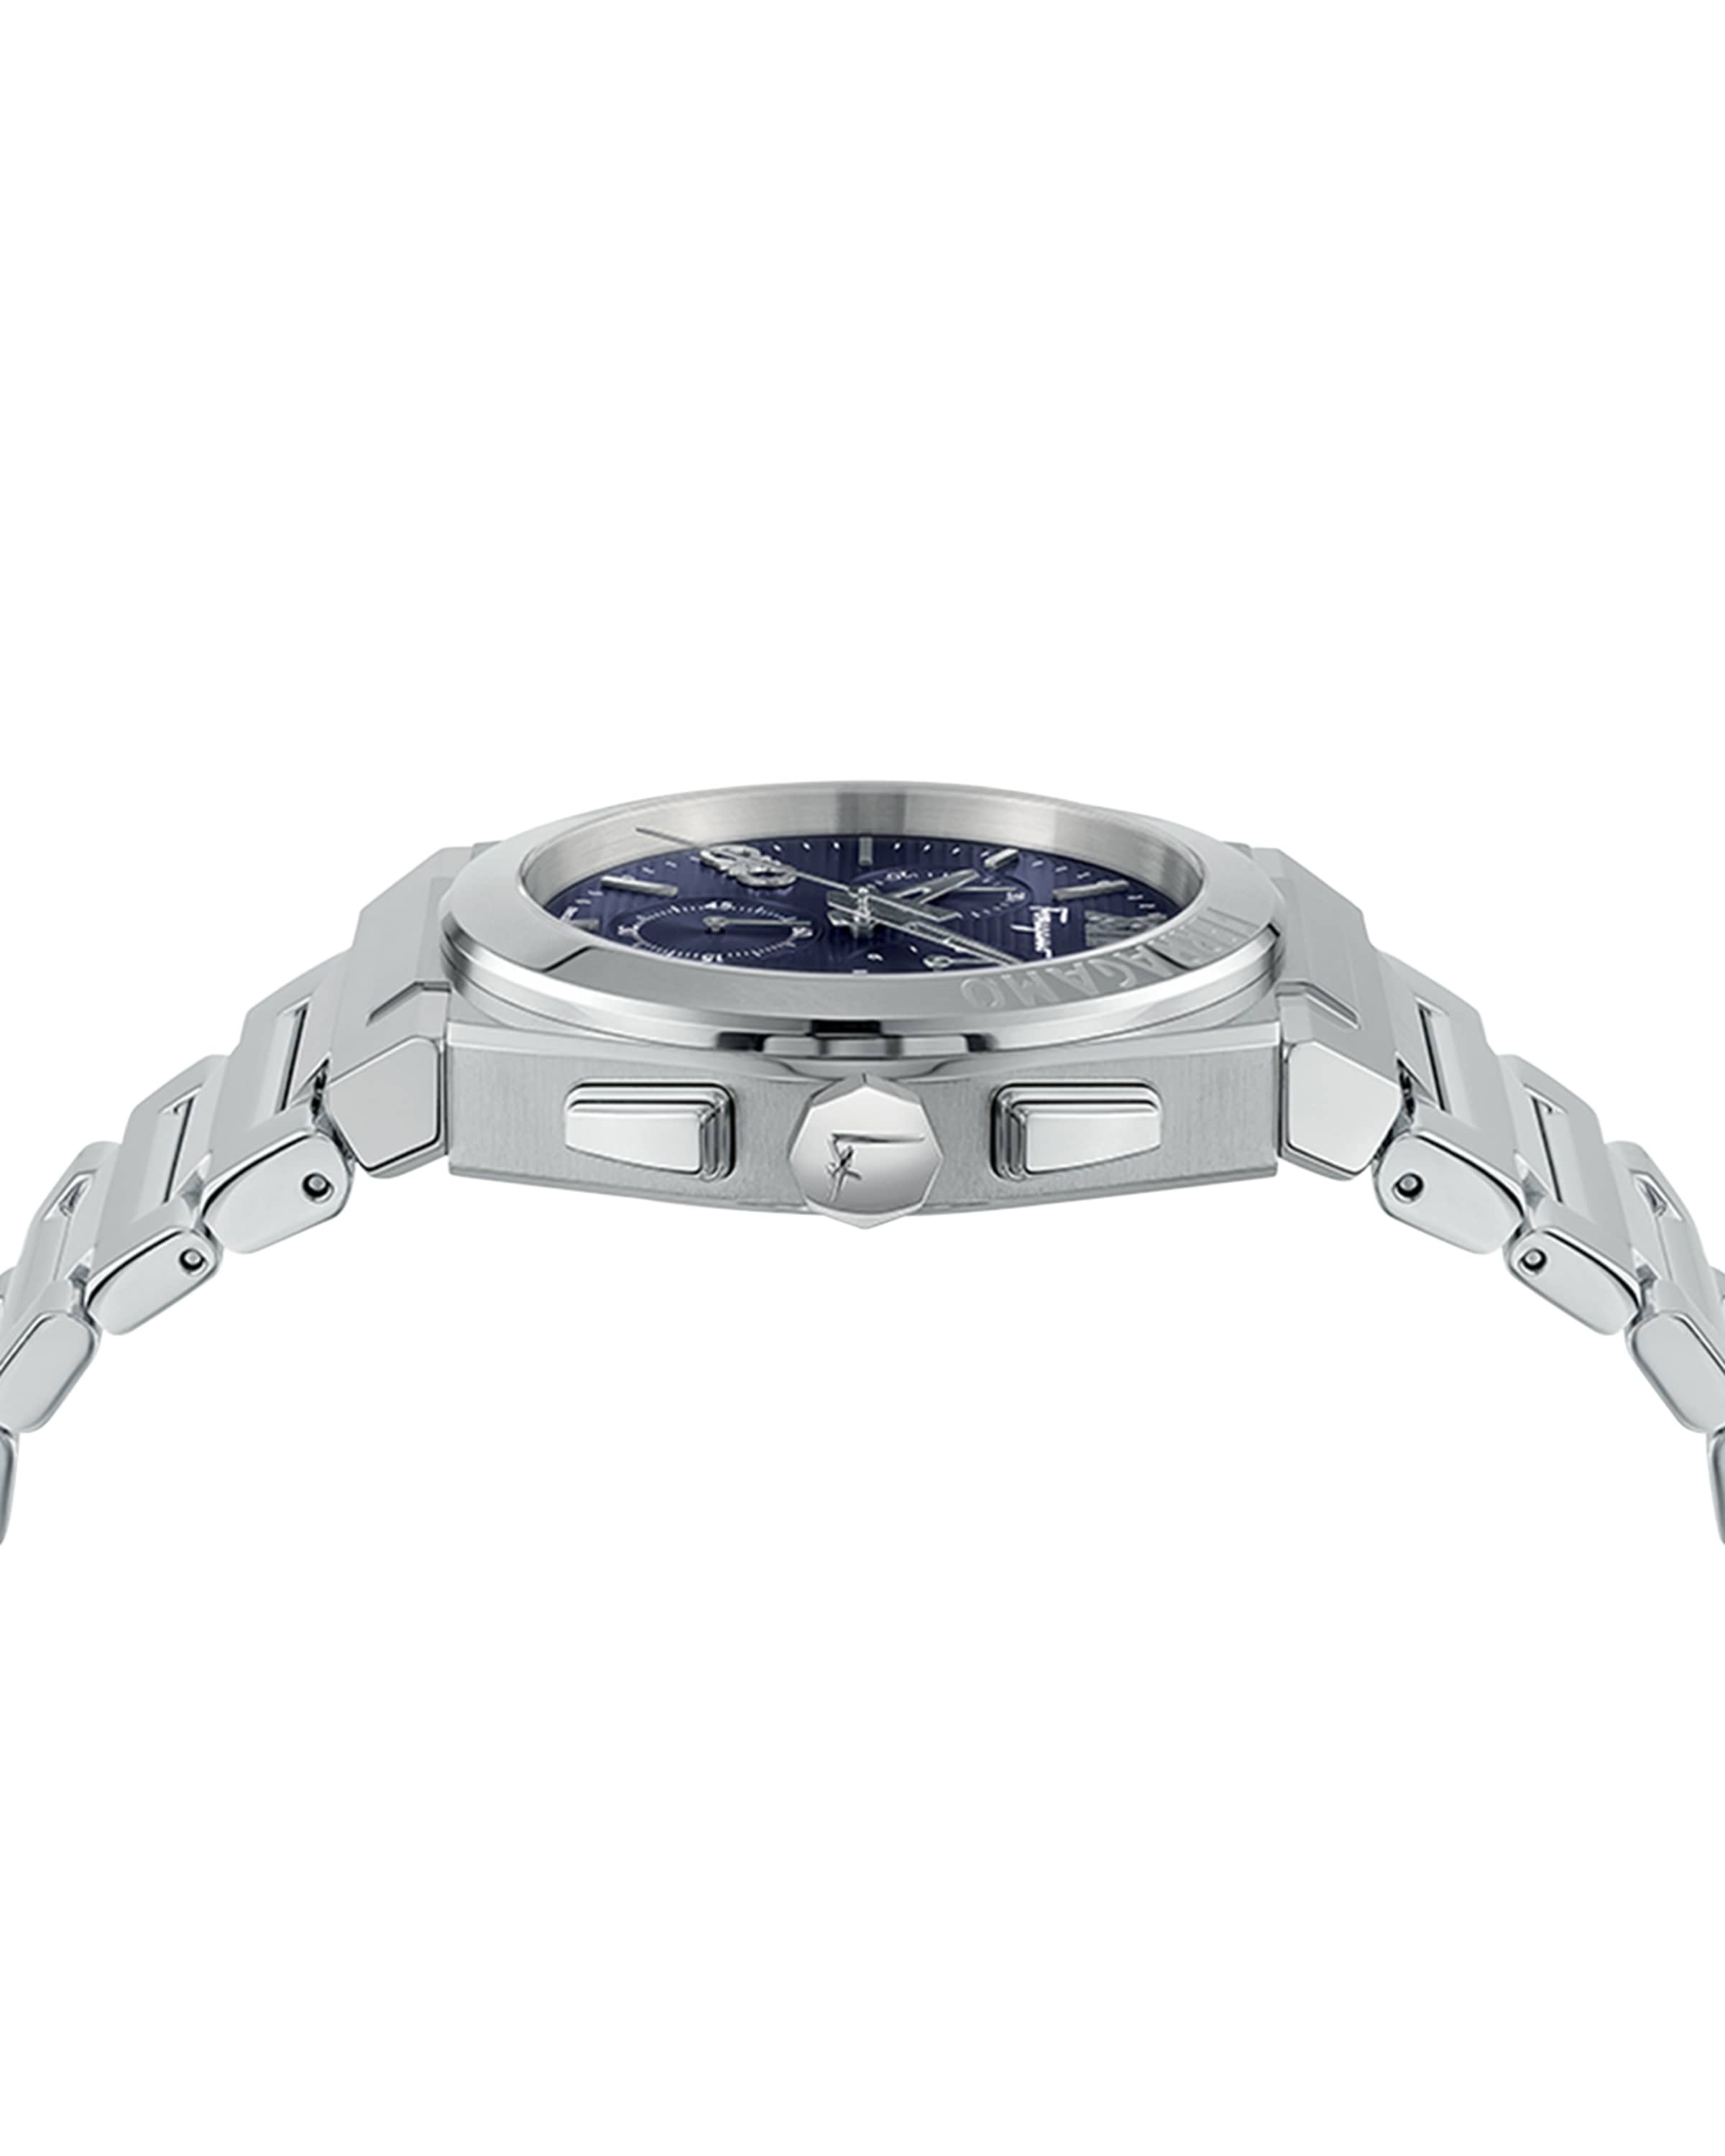 Men's Vega Chrono Stainless Steel Bracelet Watch, 42mm - 3